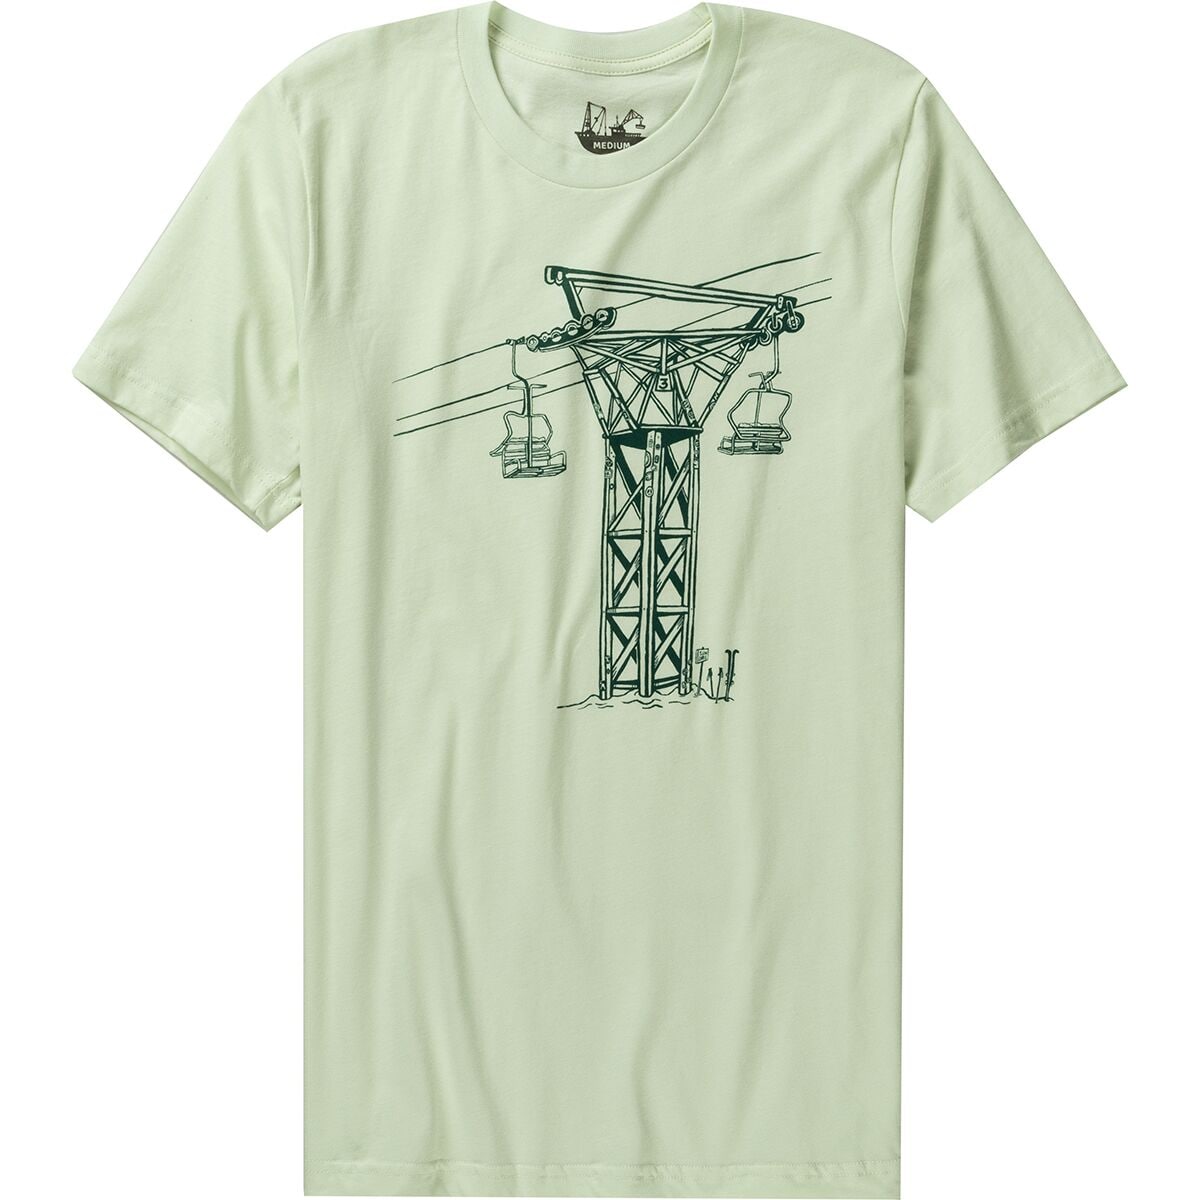 Chairlift T-Shirt - Men